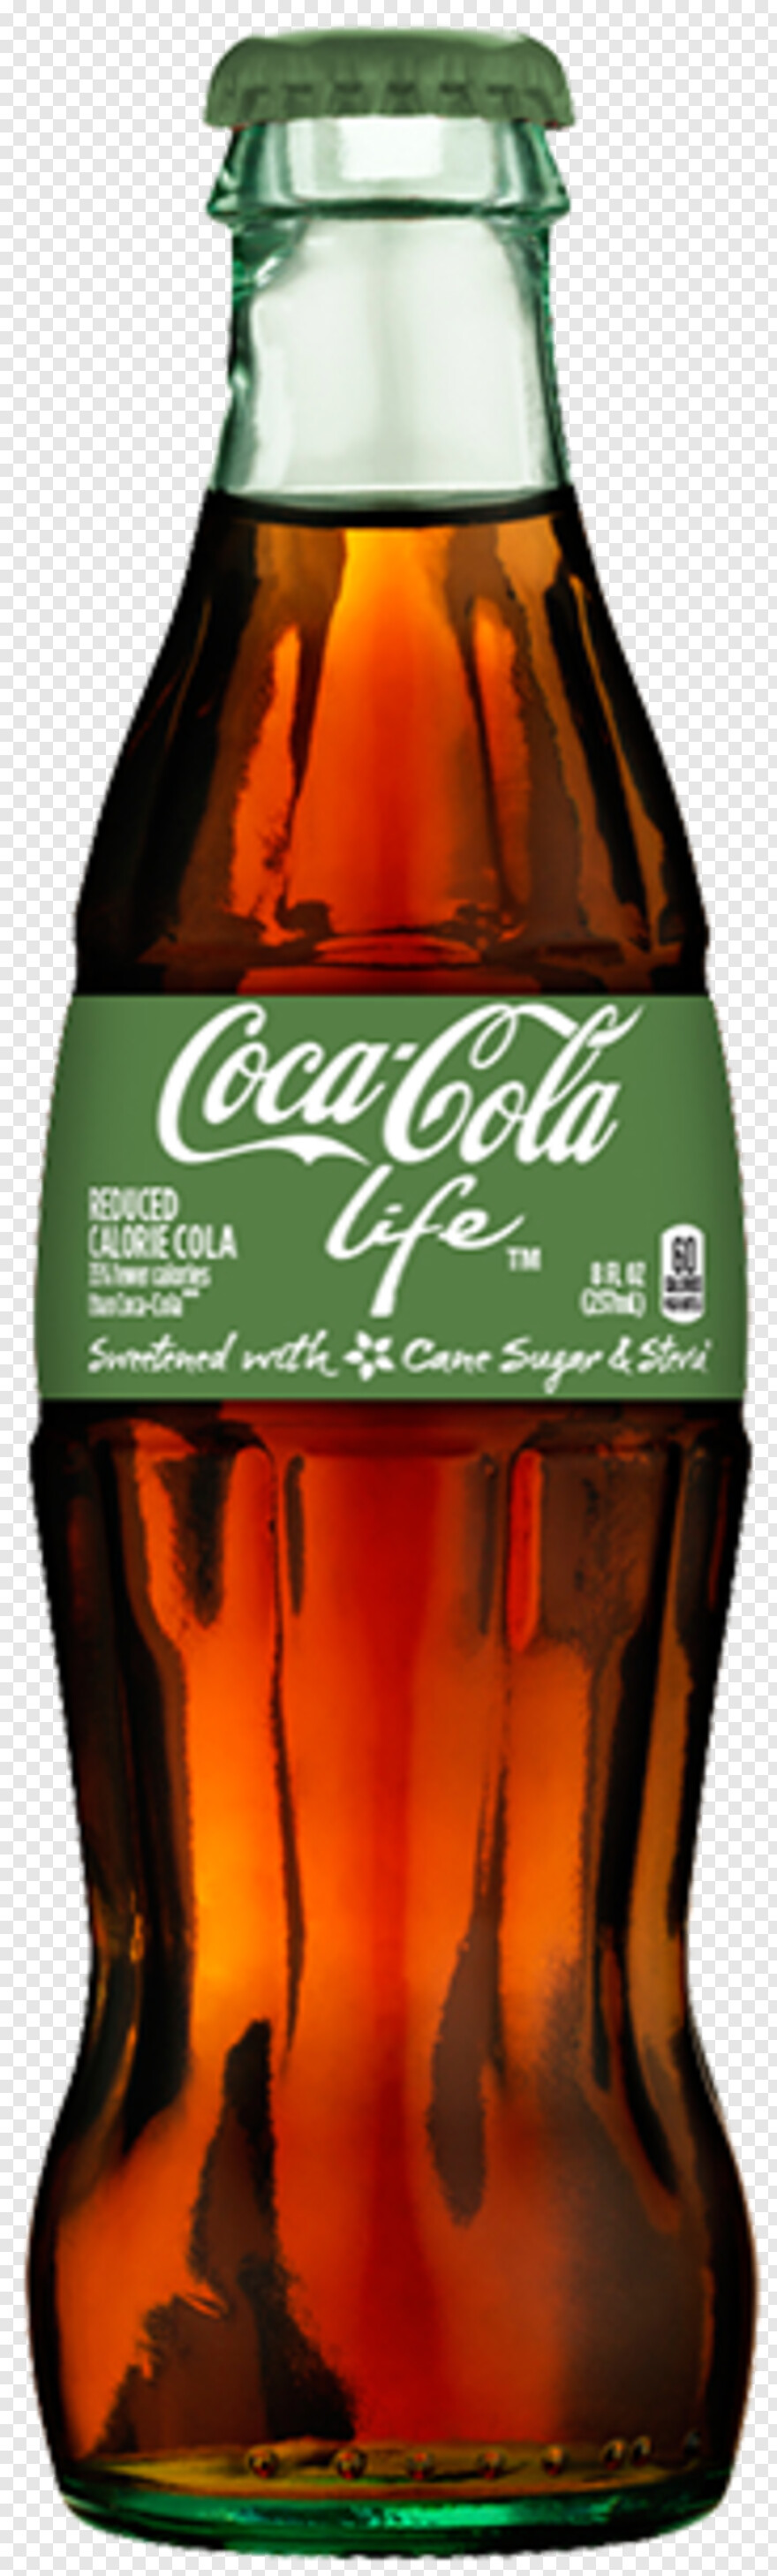 coca-cola-bottle # 326803